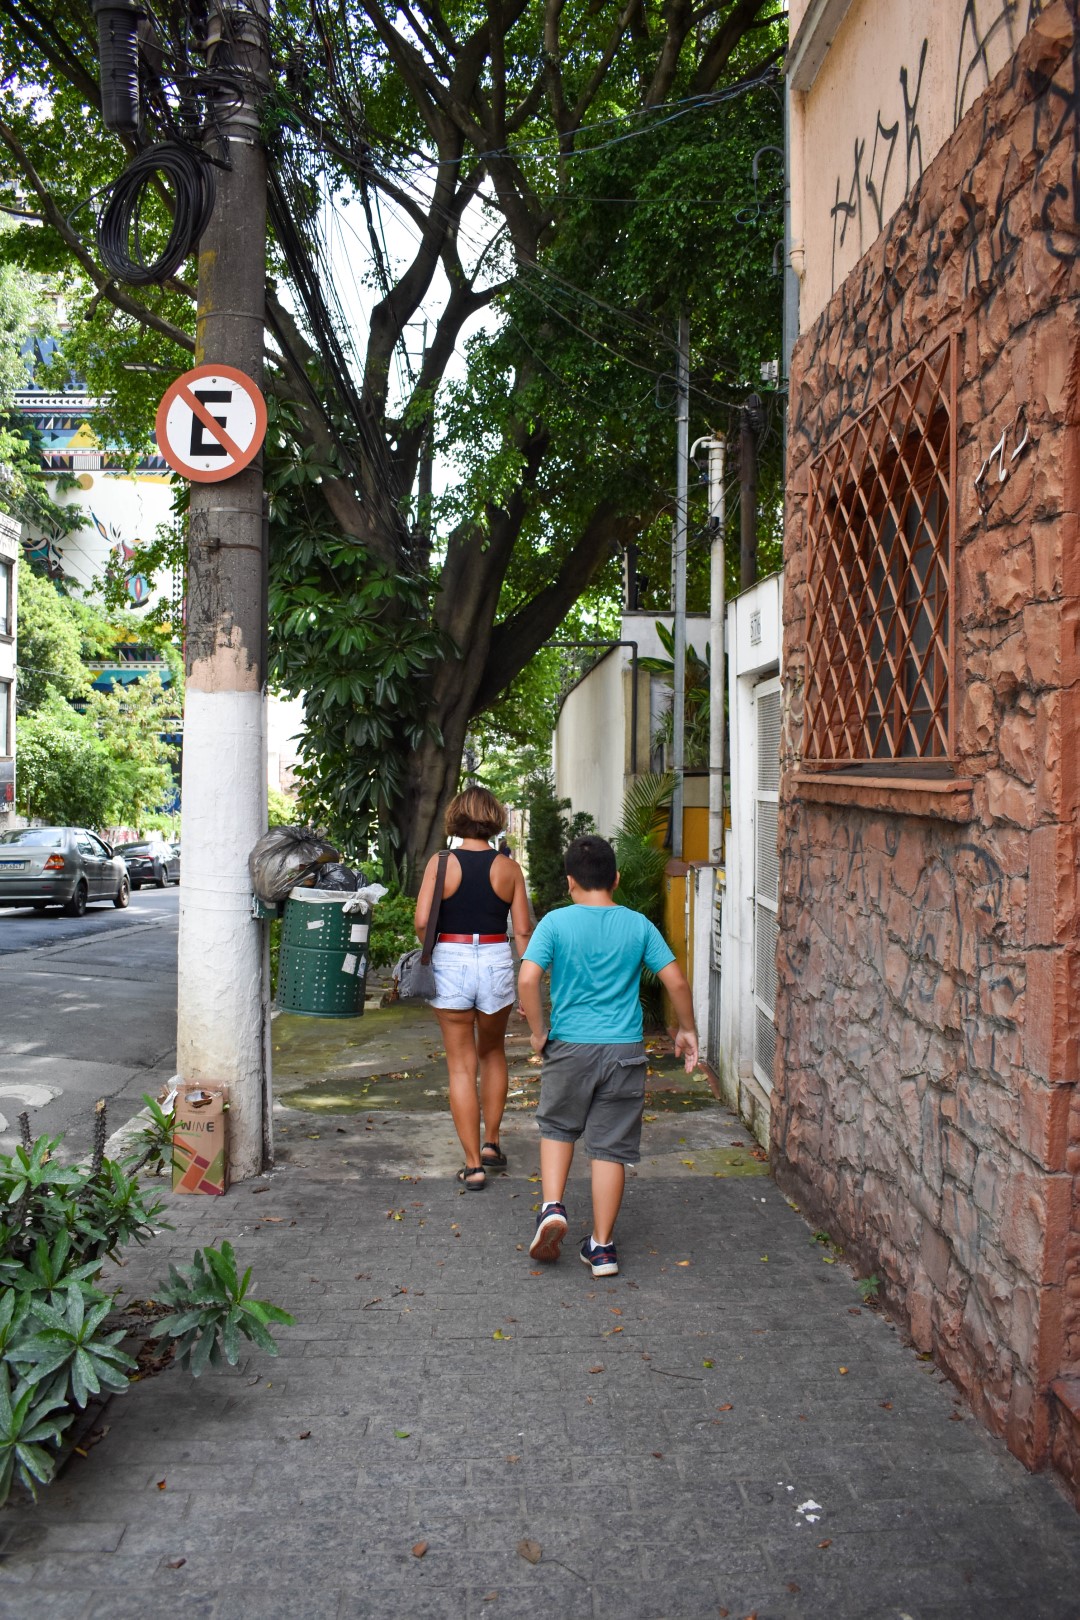 Rua Cardeal Arcoverde - Pinheiros, São Paulo - State of São Paulo